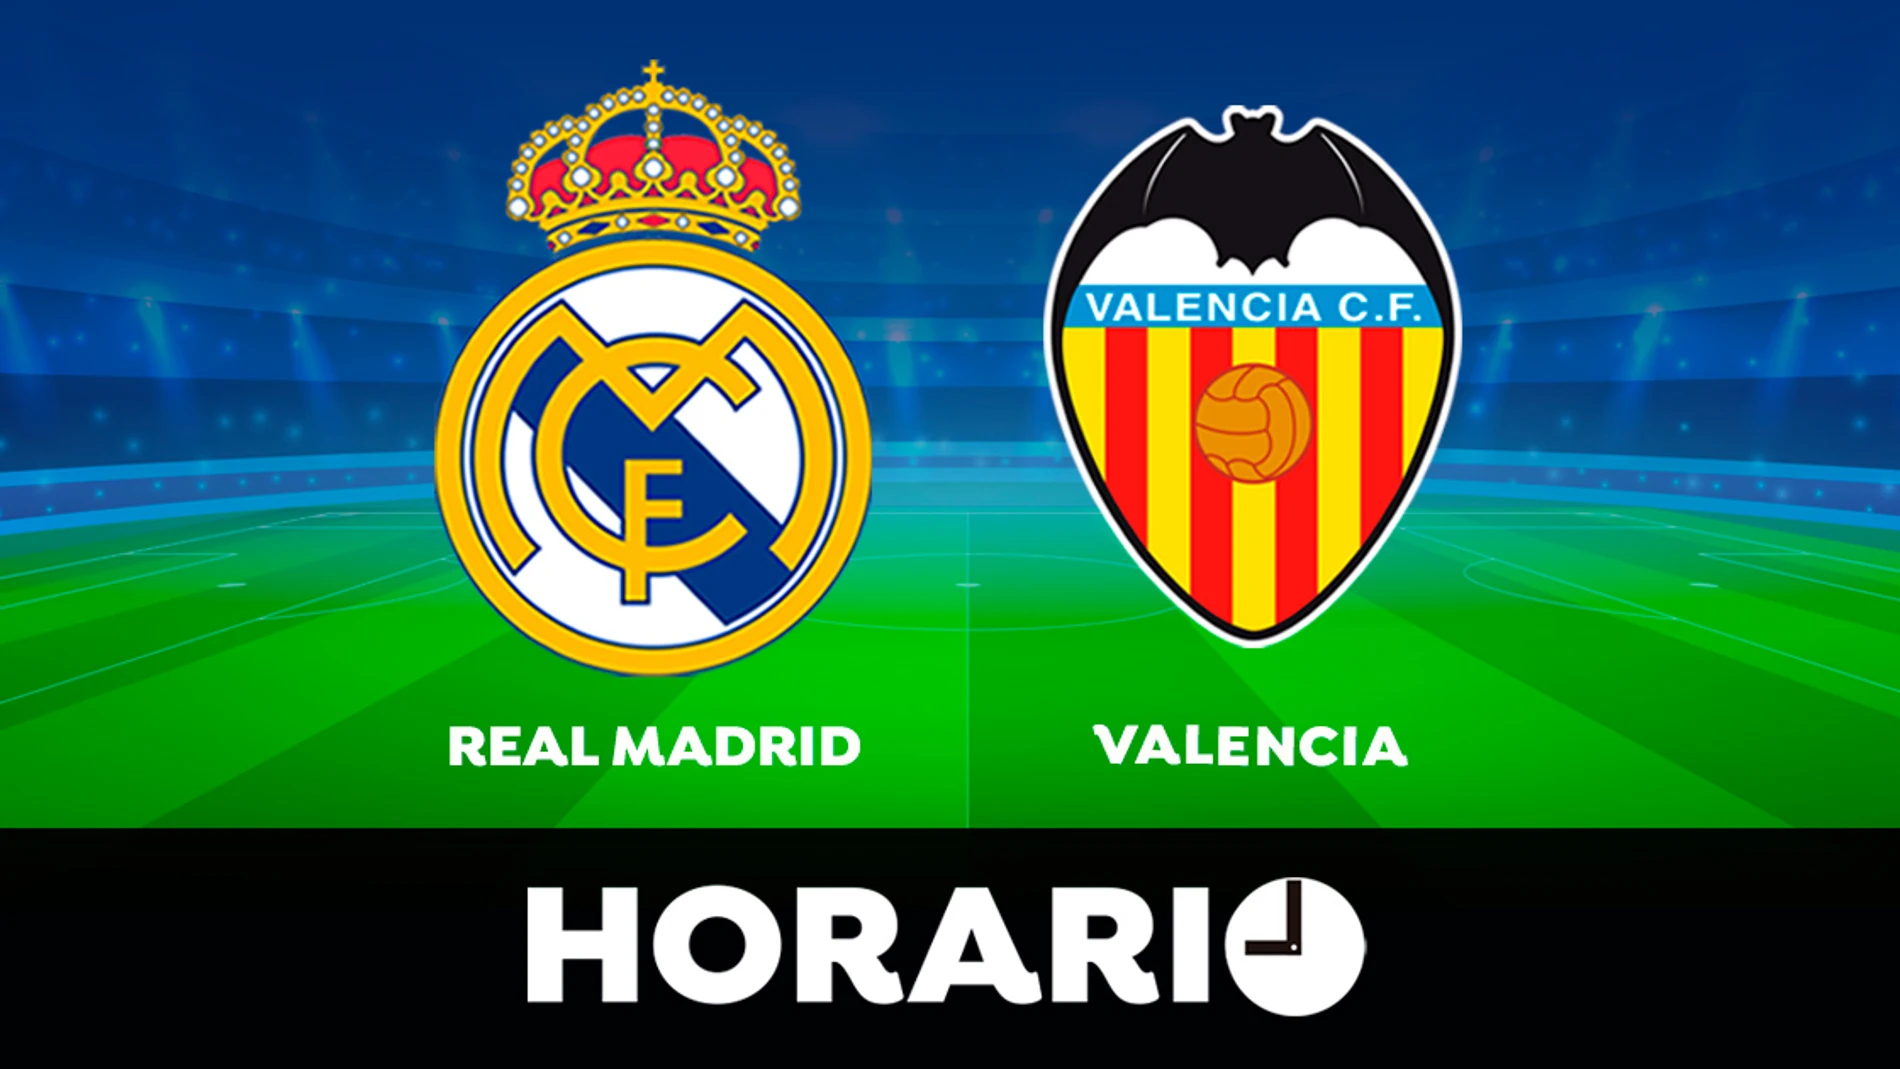 Real Madrid - Valencia: Horario y dónde ver el partido de la Liga Santander en directo